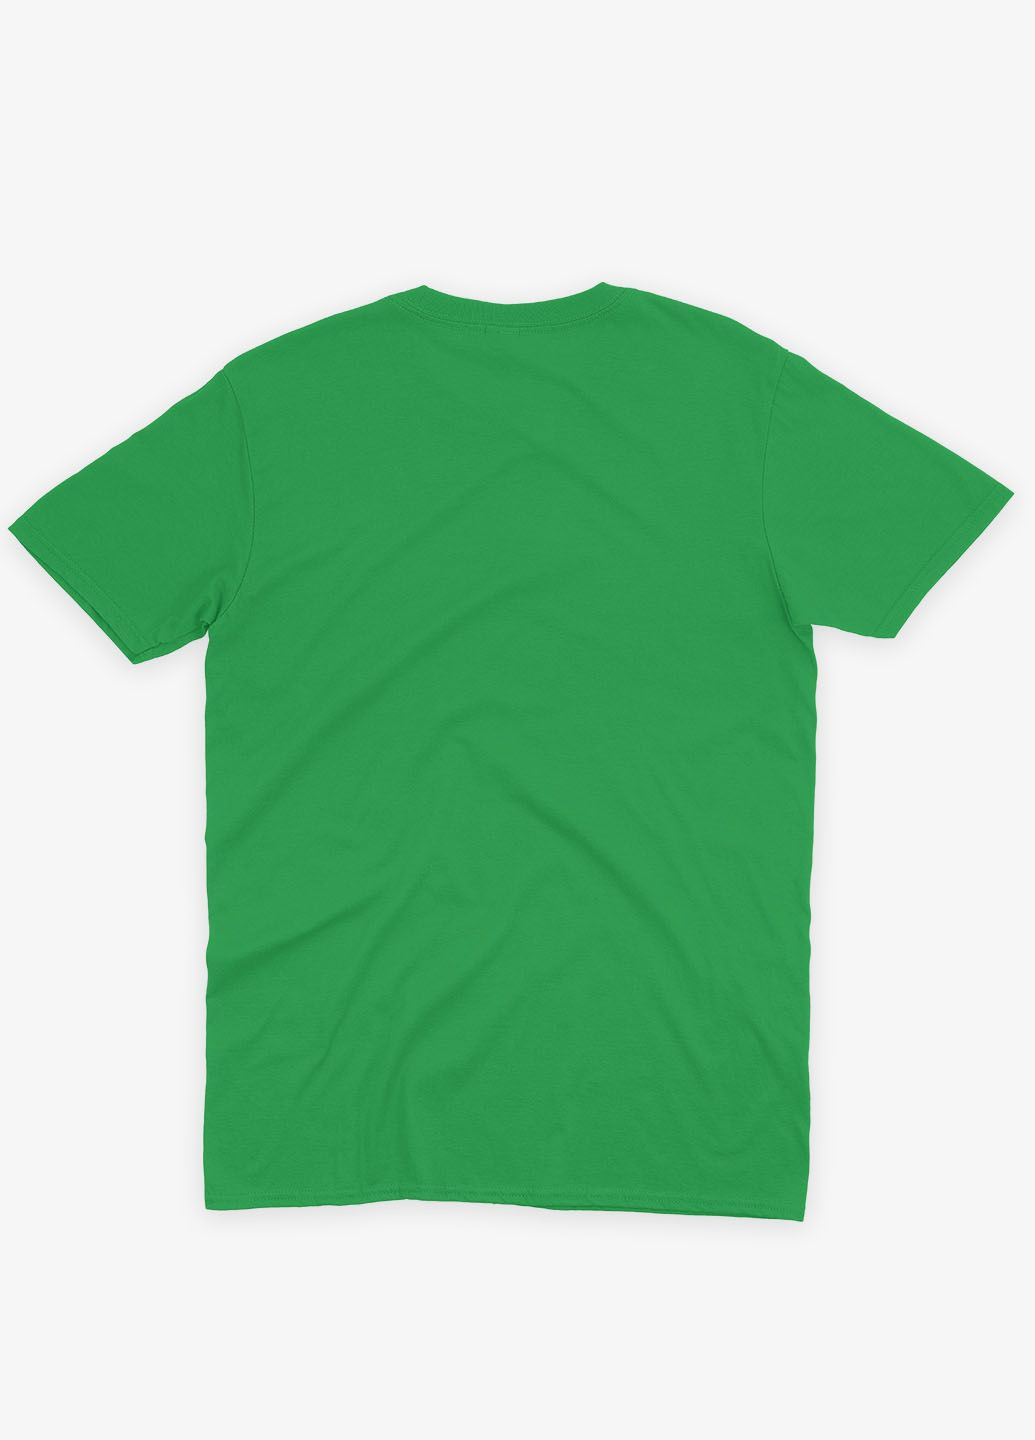 Зелена демісезонна футболка для хлопчика з принтом супергероя - залізна людина (ts001-1-keg-006-016-021-b) Modno